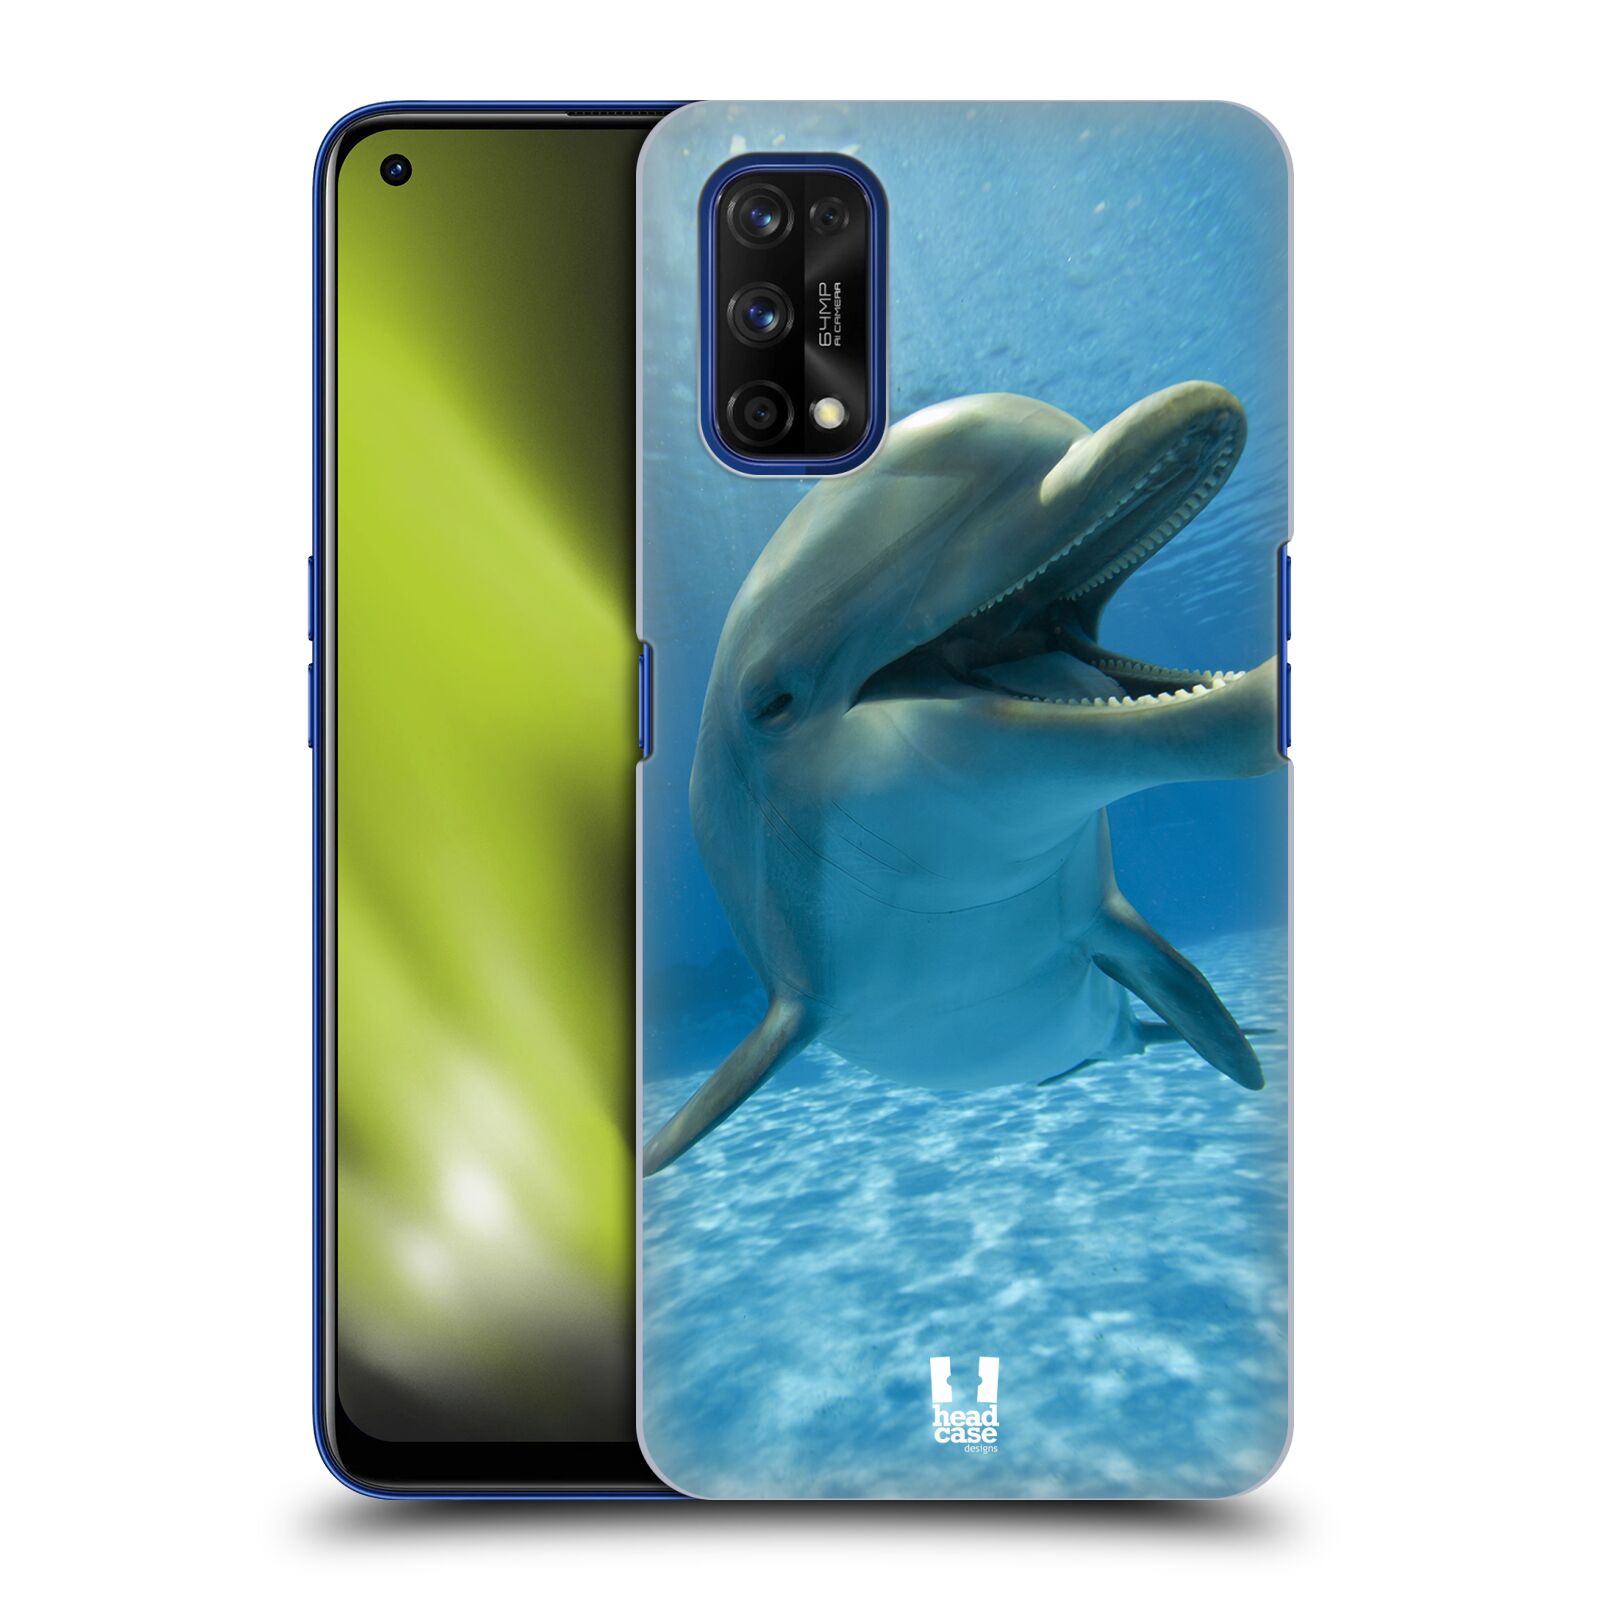 Zadní obal pro mobil Realme 7 PRO - HEAD CASE - Svět zvířat delfín v moři